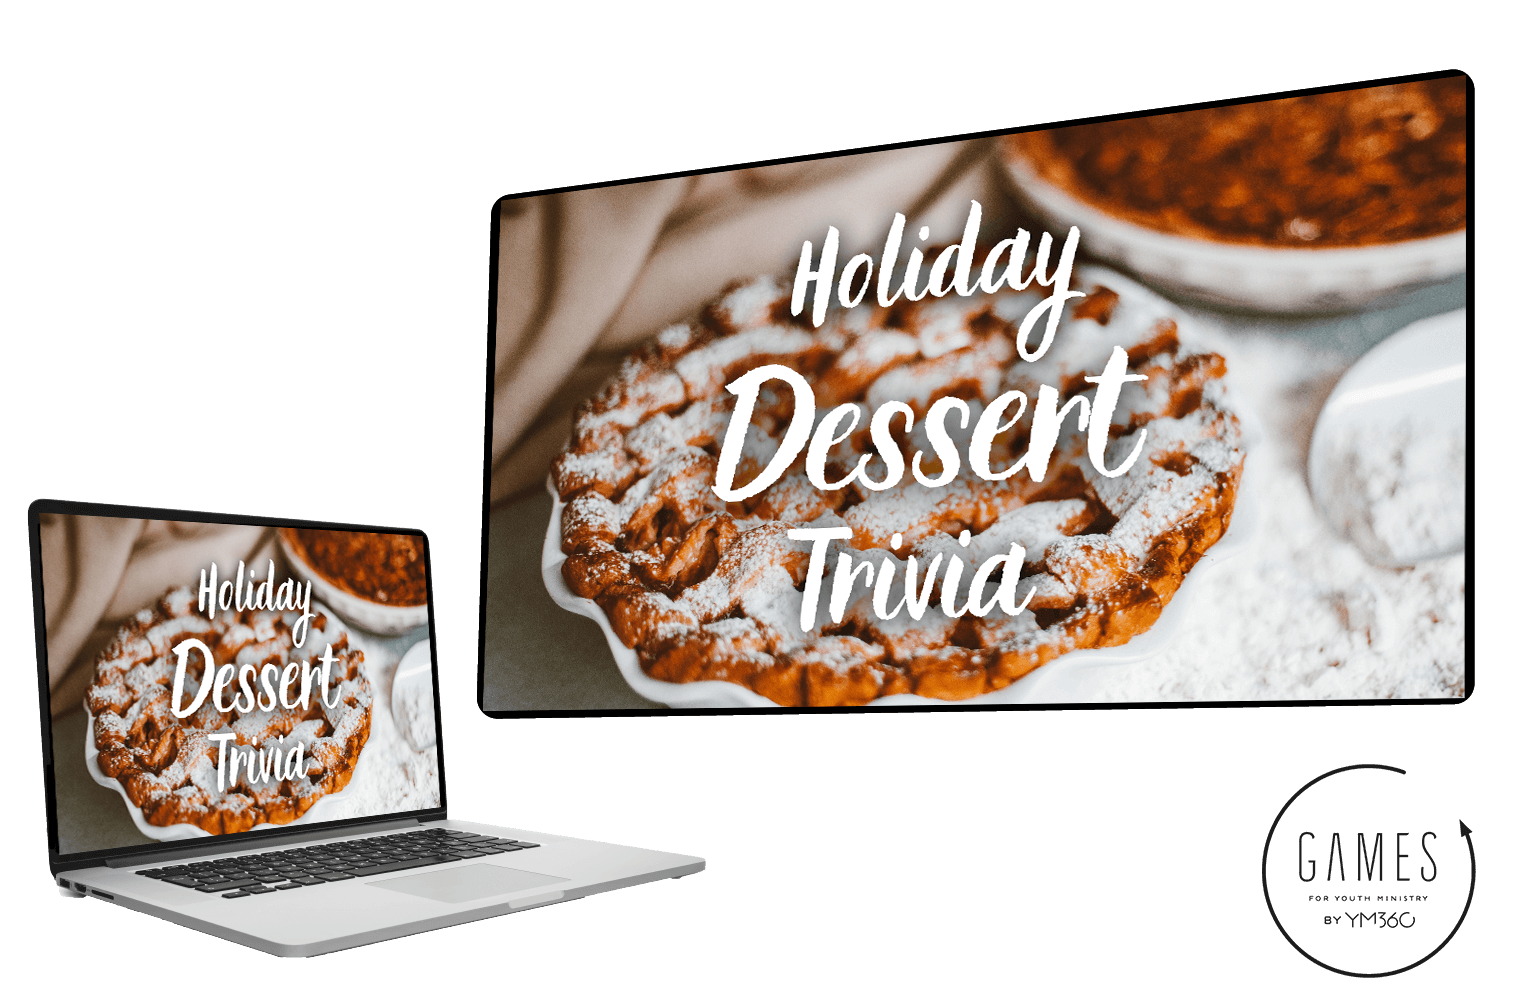 Holiday Dessert Trivia